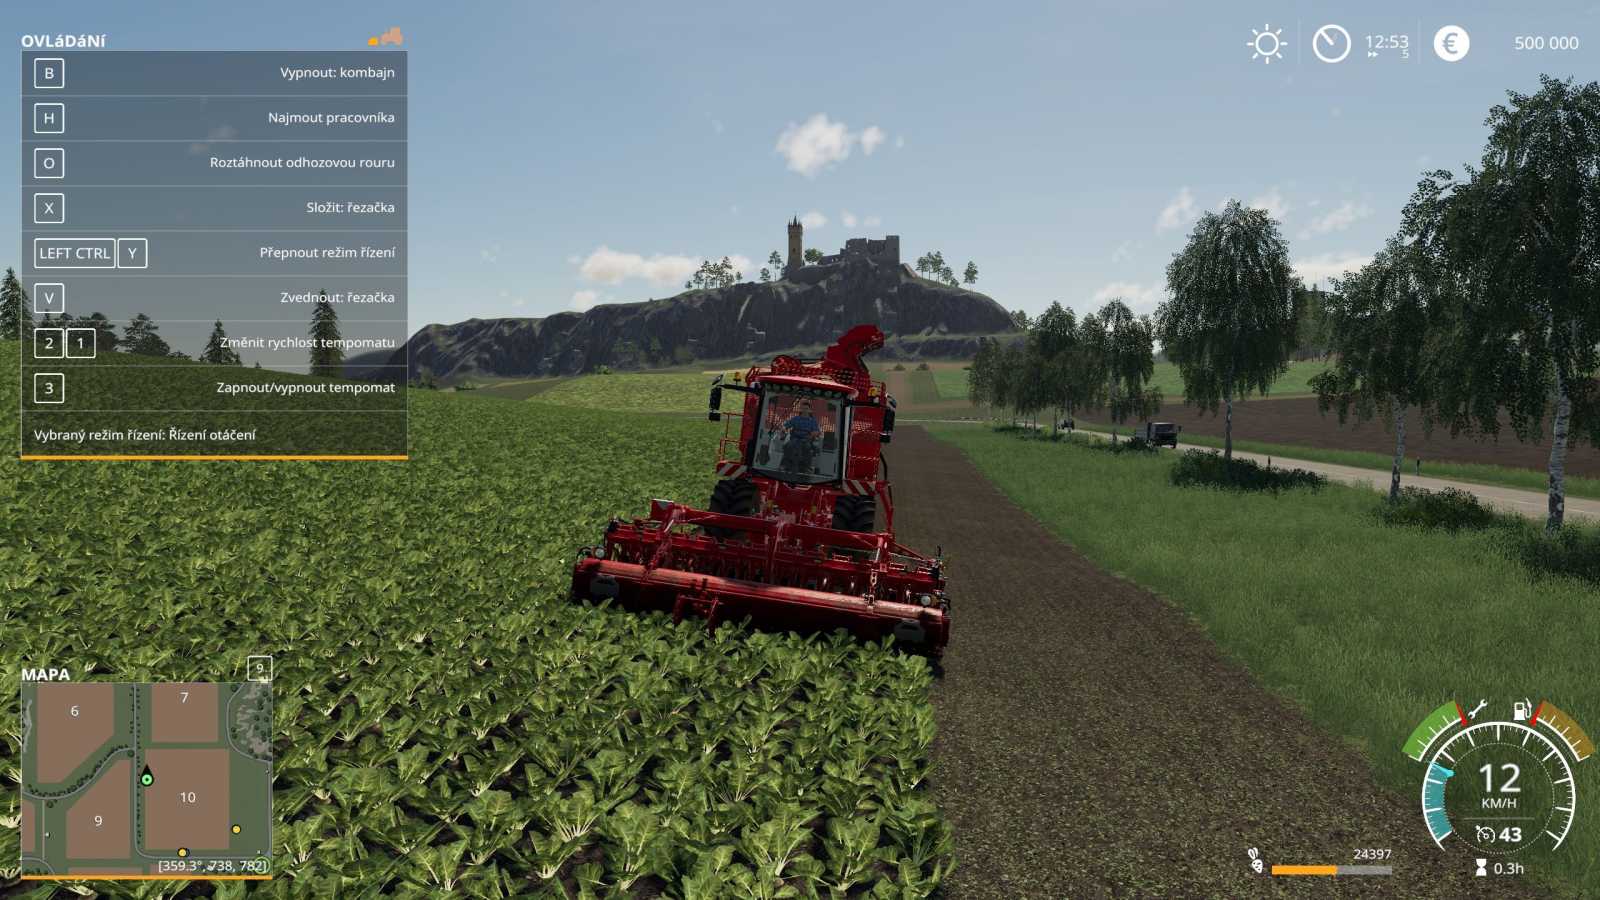 Farming Simulator 2019 – polem nepolem